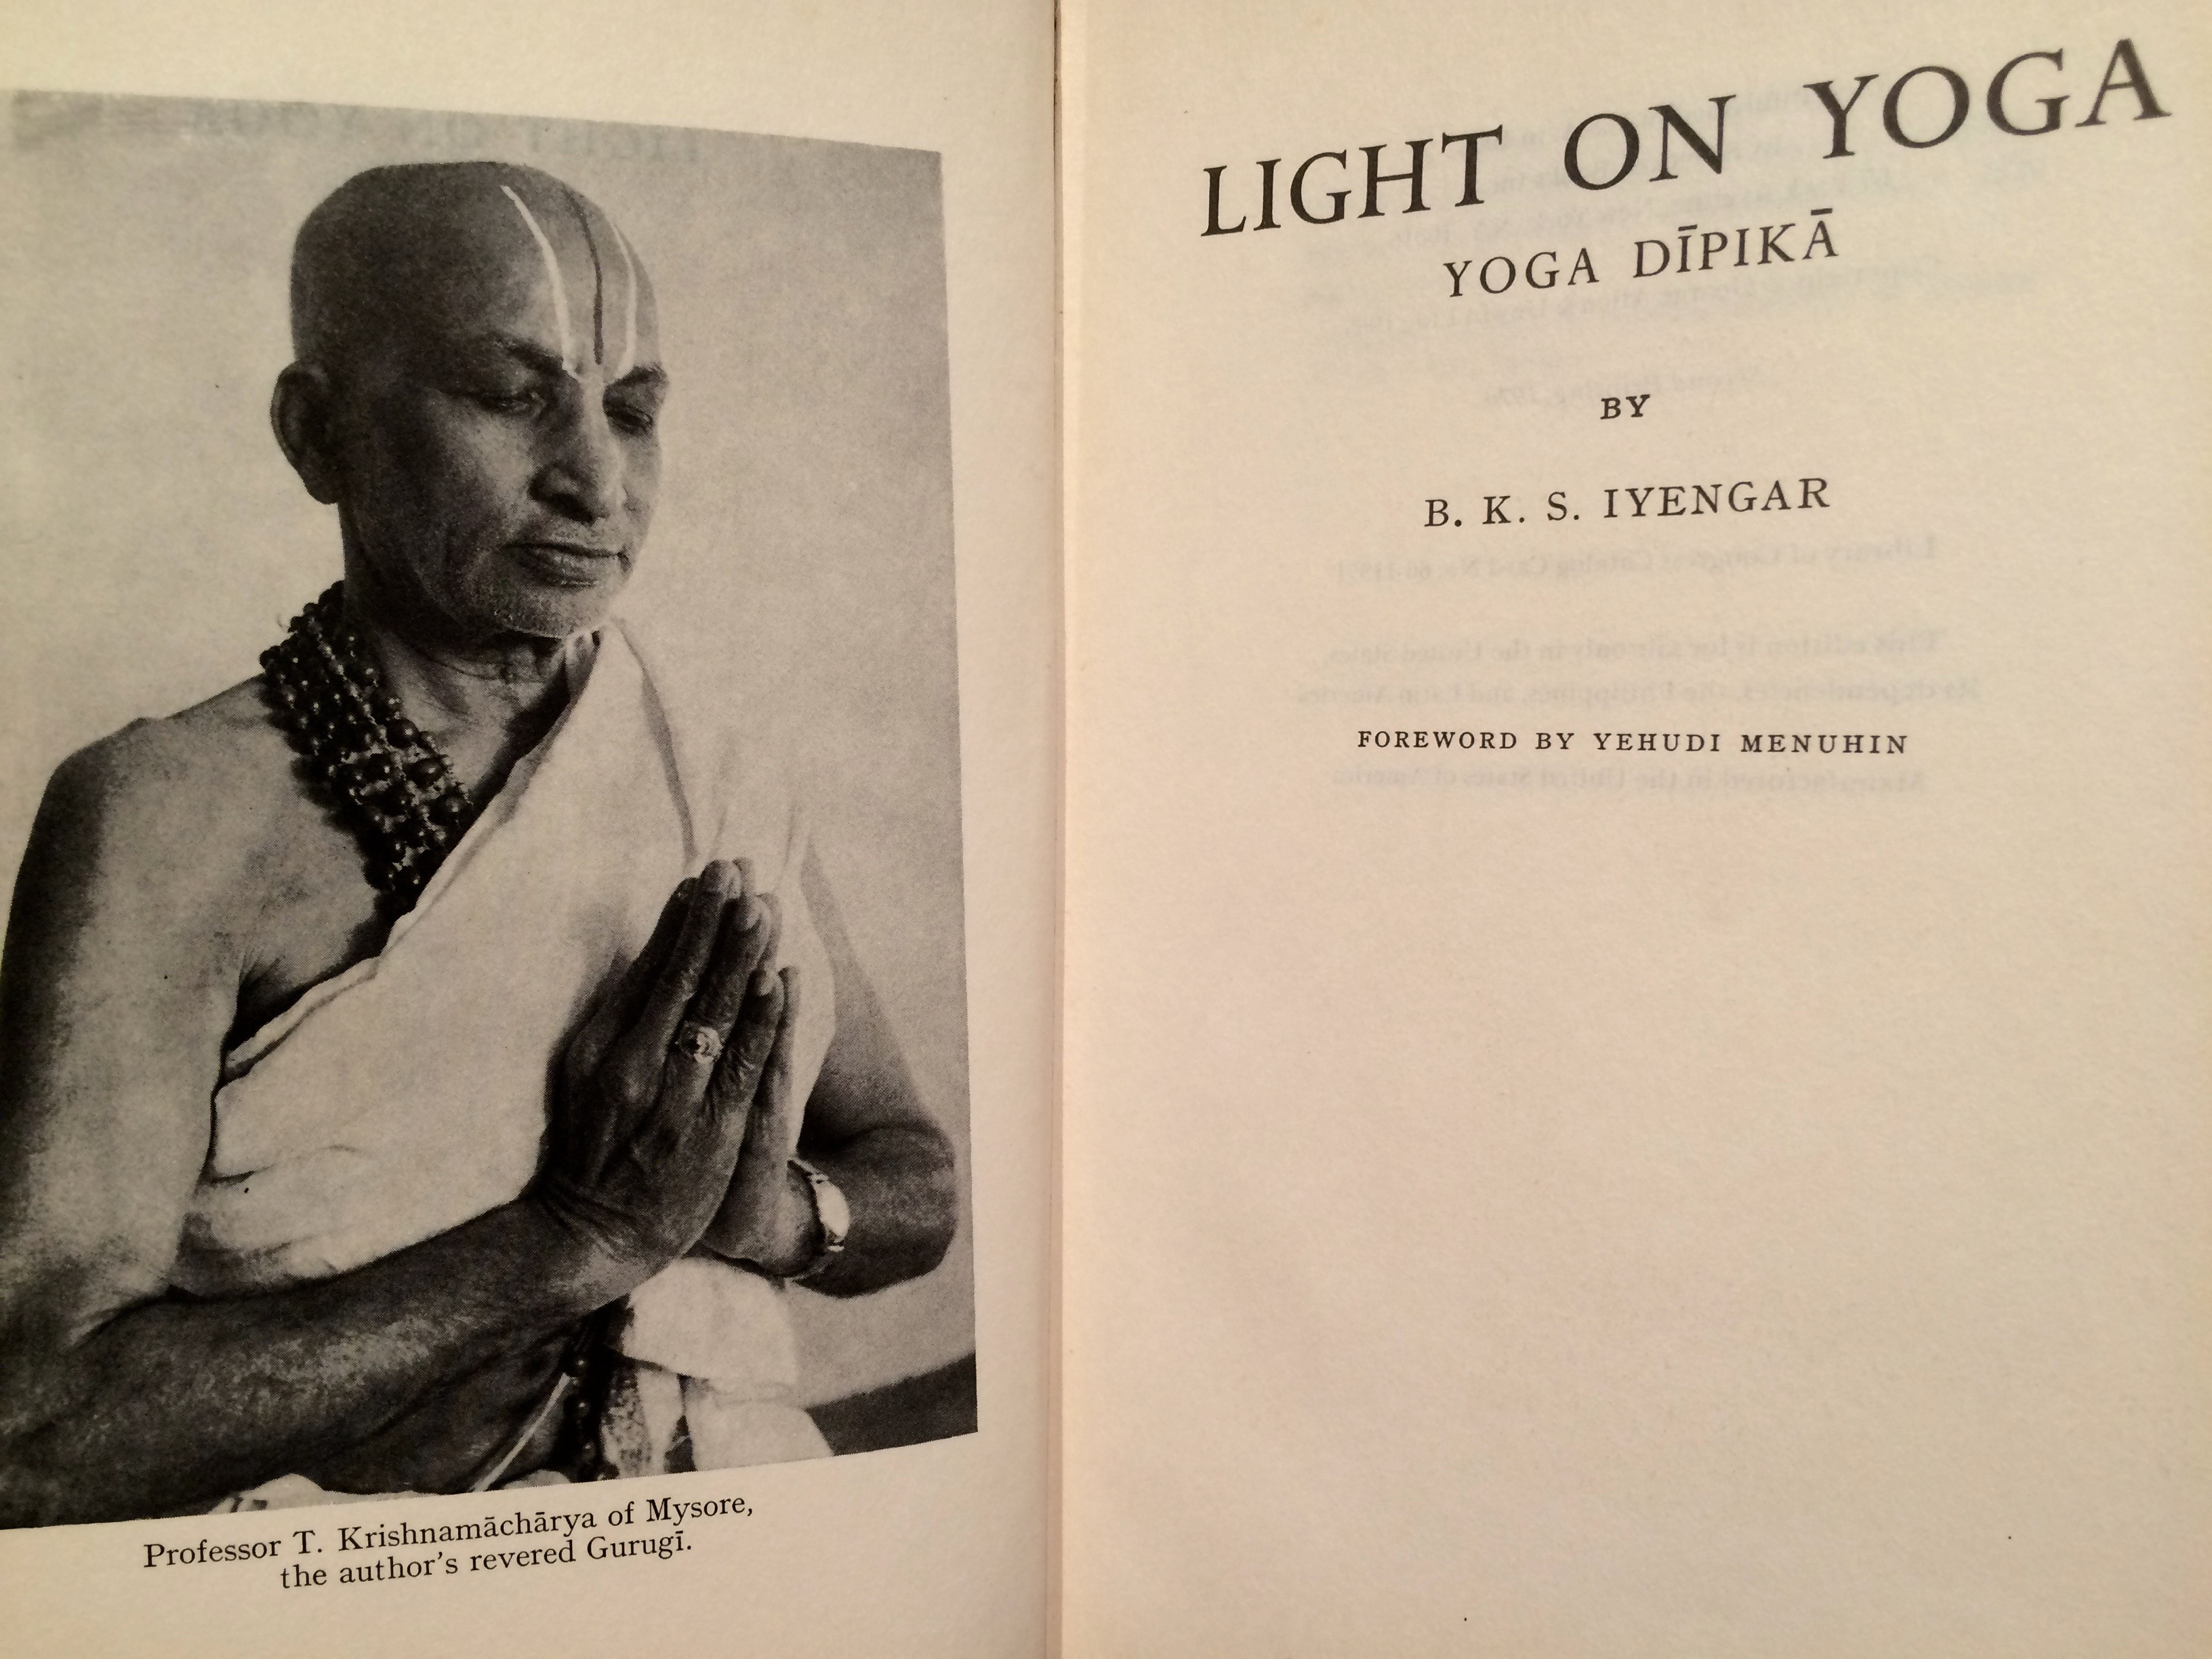 B K S Iyengar Quotes Light On Life
 Light on Yoga Yoga Dipika by B K S Iyengar